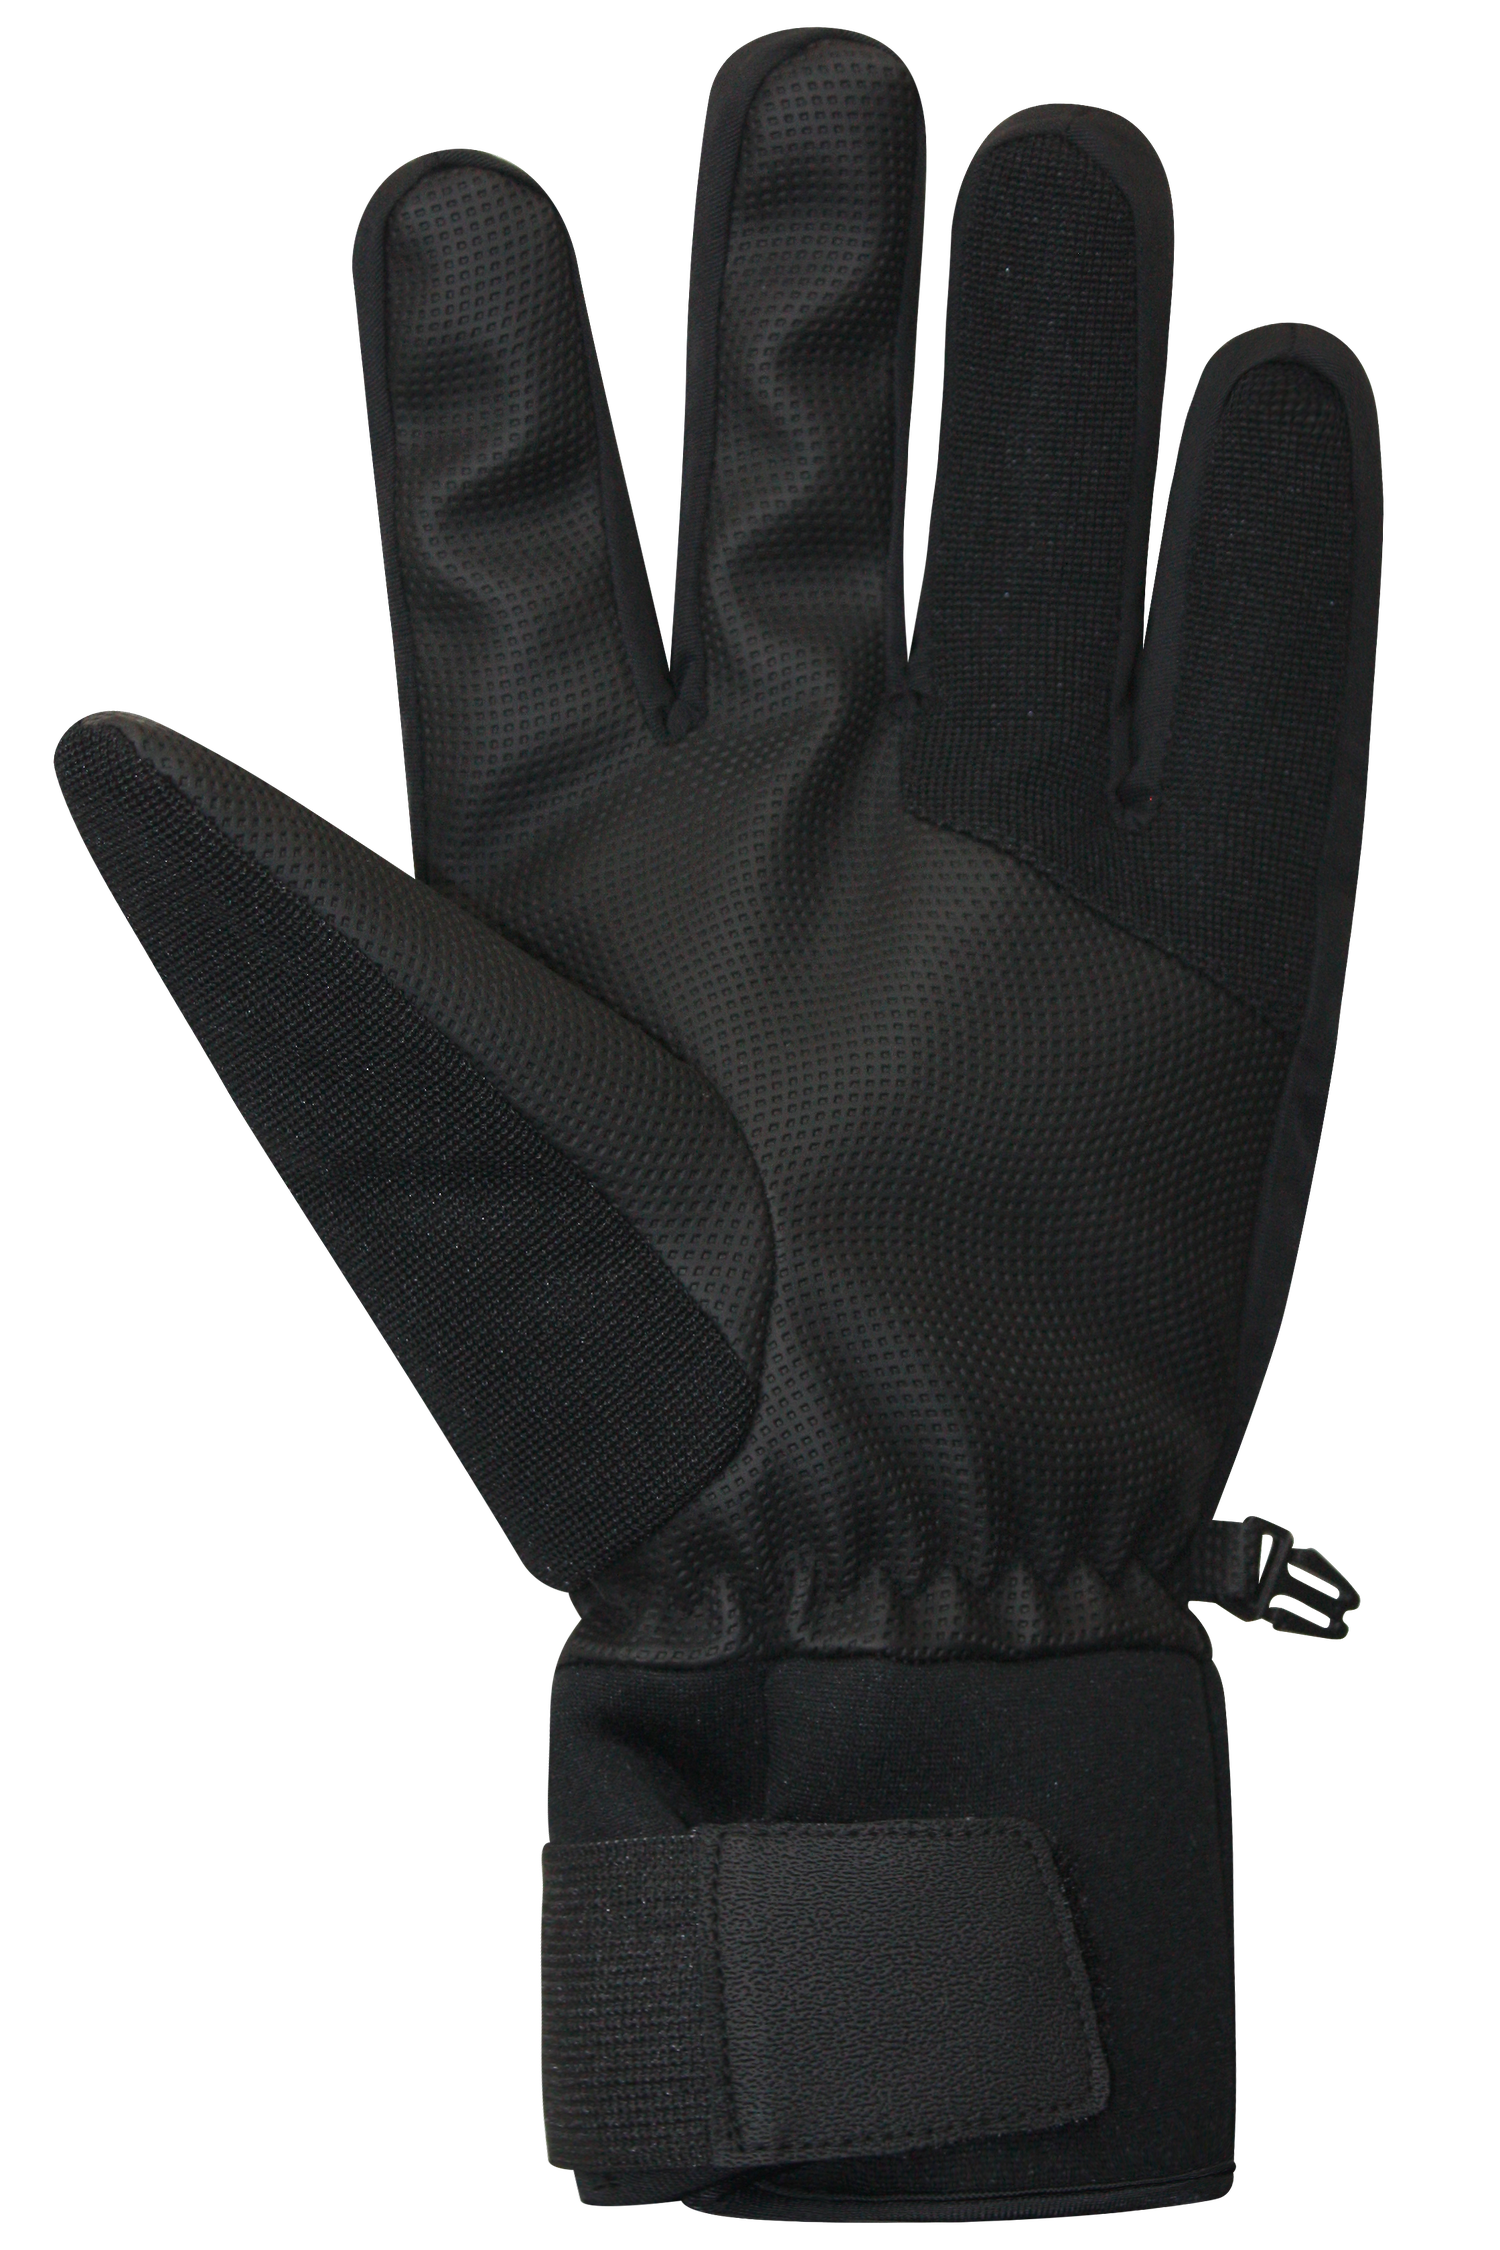 Parabolic Gloves - Junior, Black